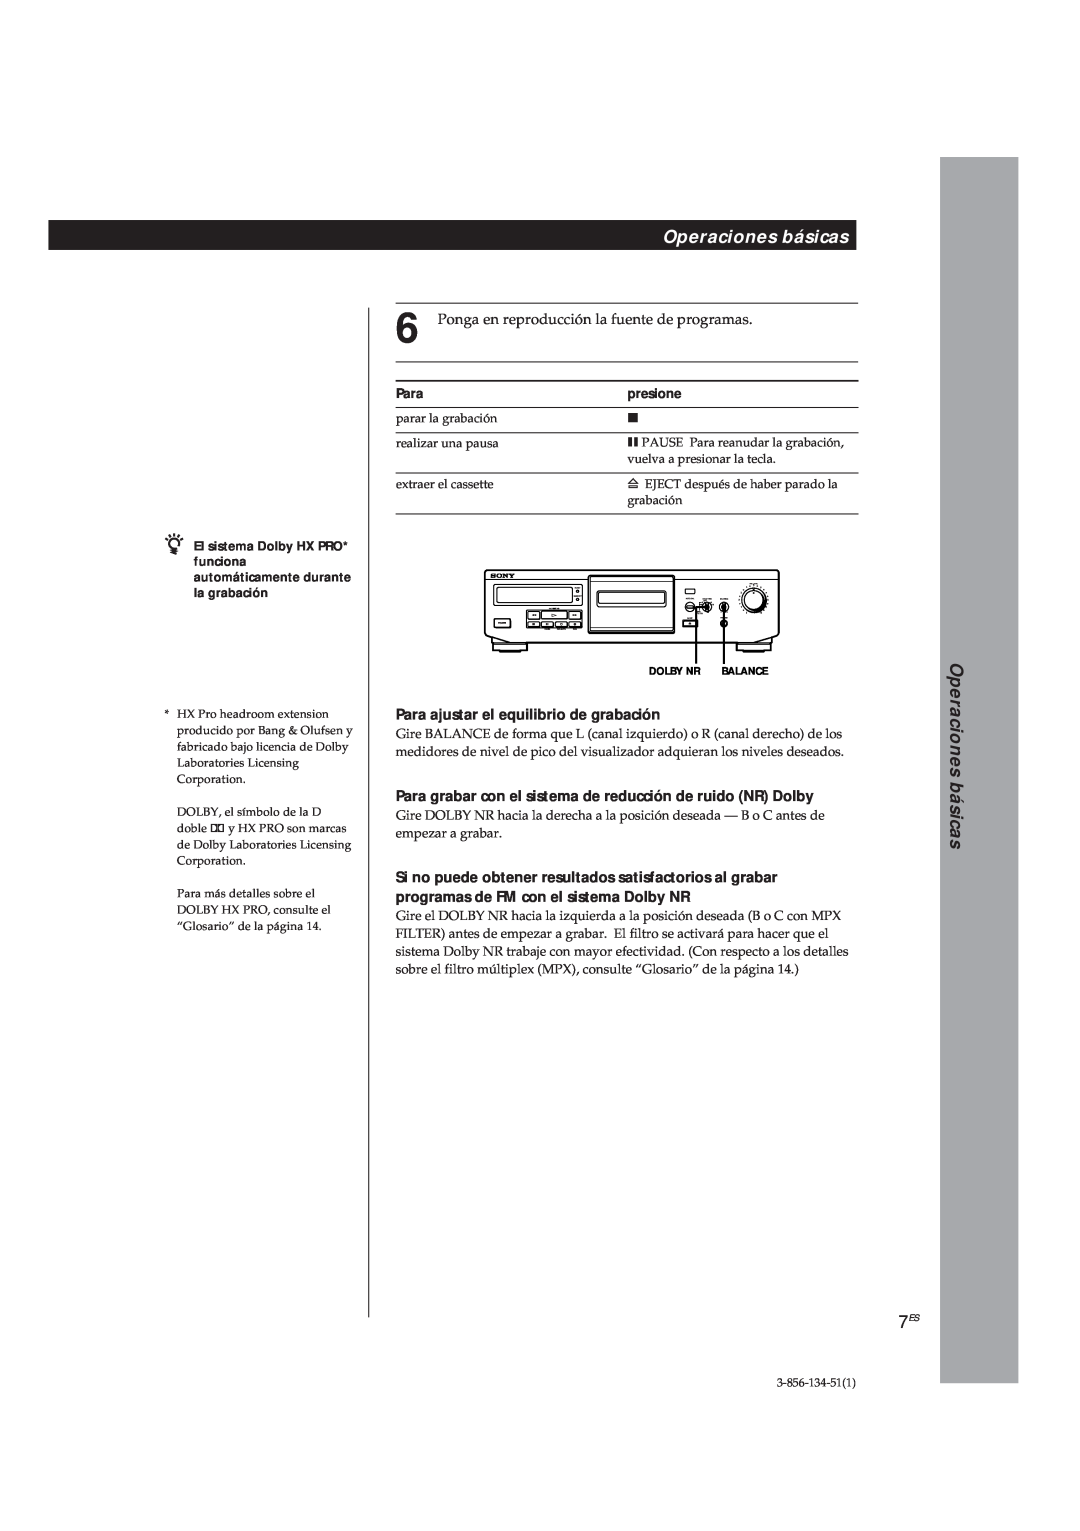 Sony TC-KE300 operating instructions Para ajustar el equilibrio de grabación, Operaciones básicas 